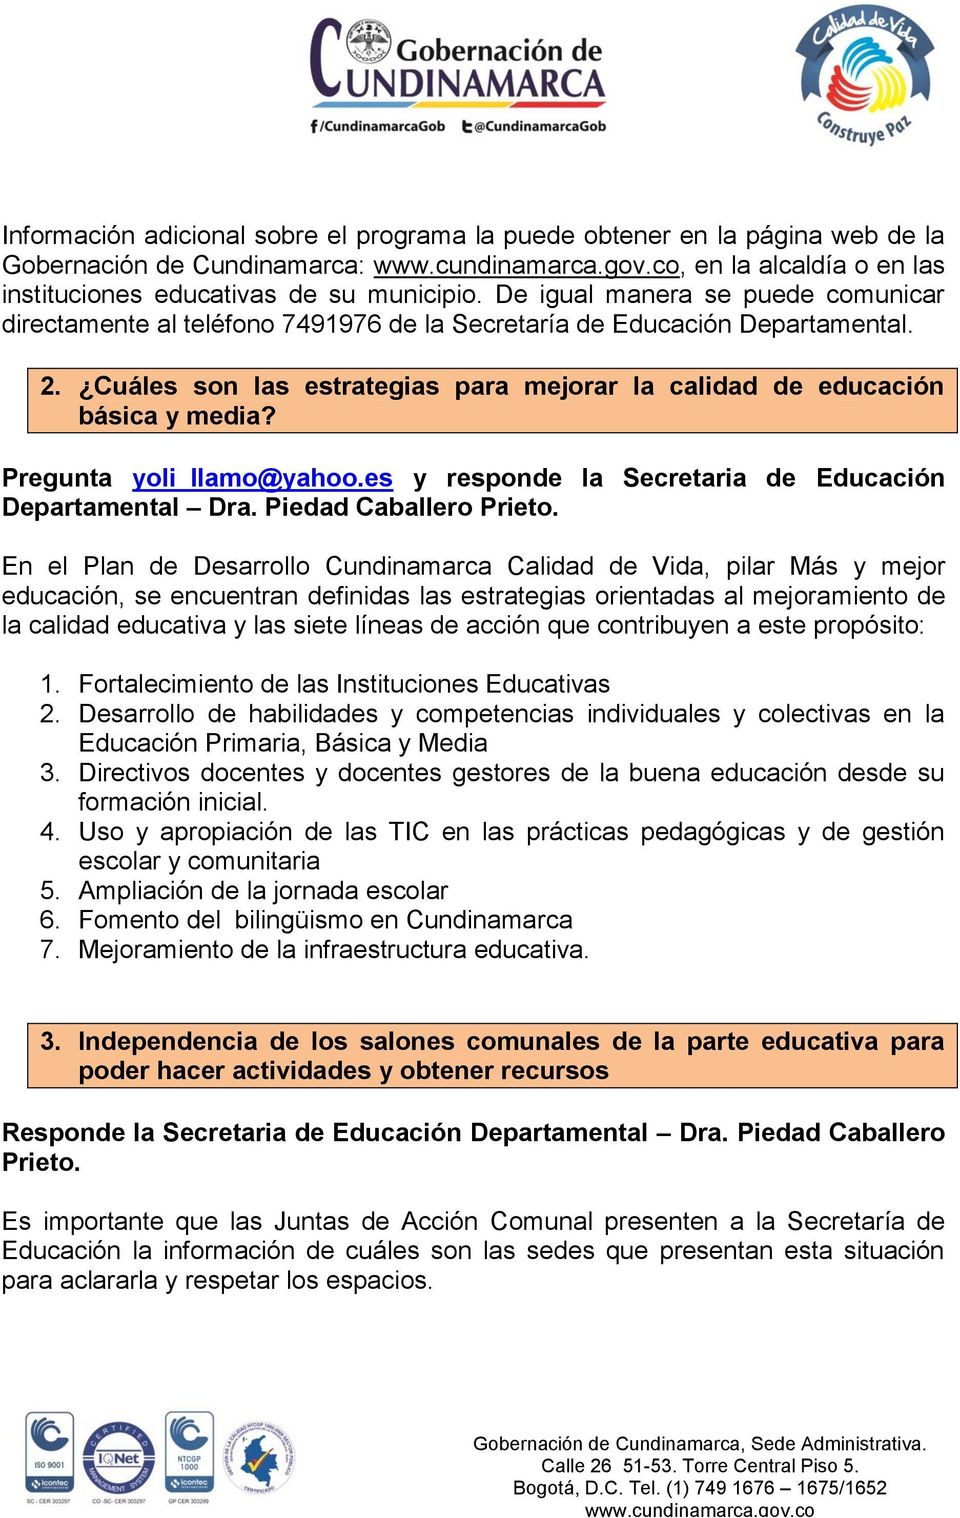 Pregunta yoli_llamo@yahoo.es y responde la Secretaria de Educación Departamental Dra. Piedad Caballero Prieto.